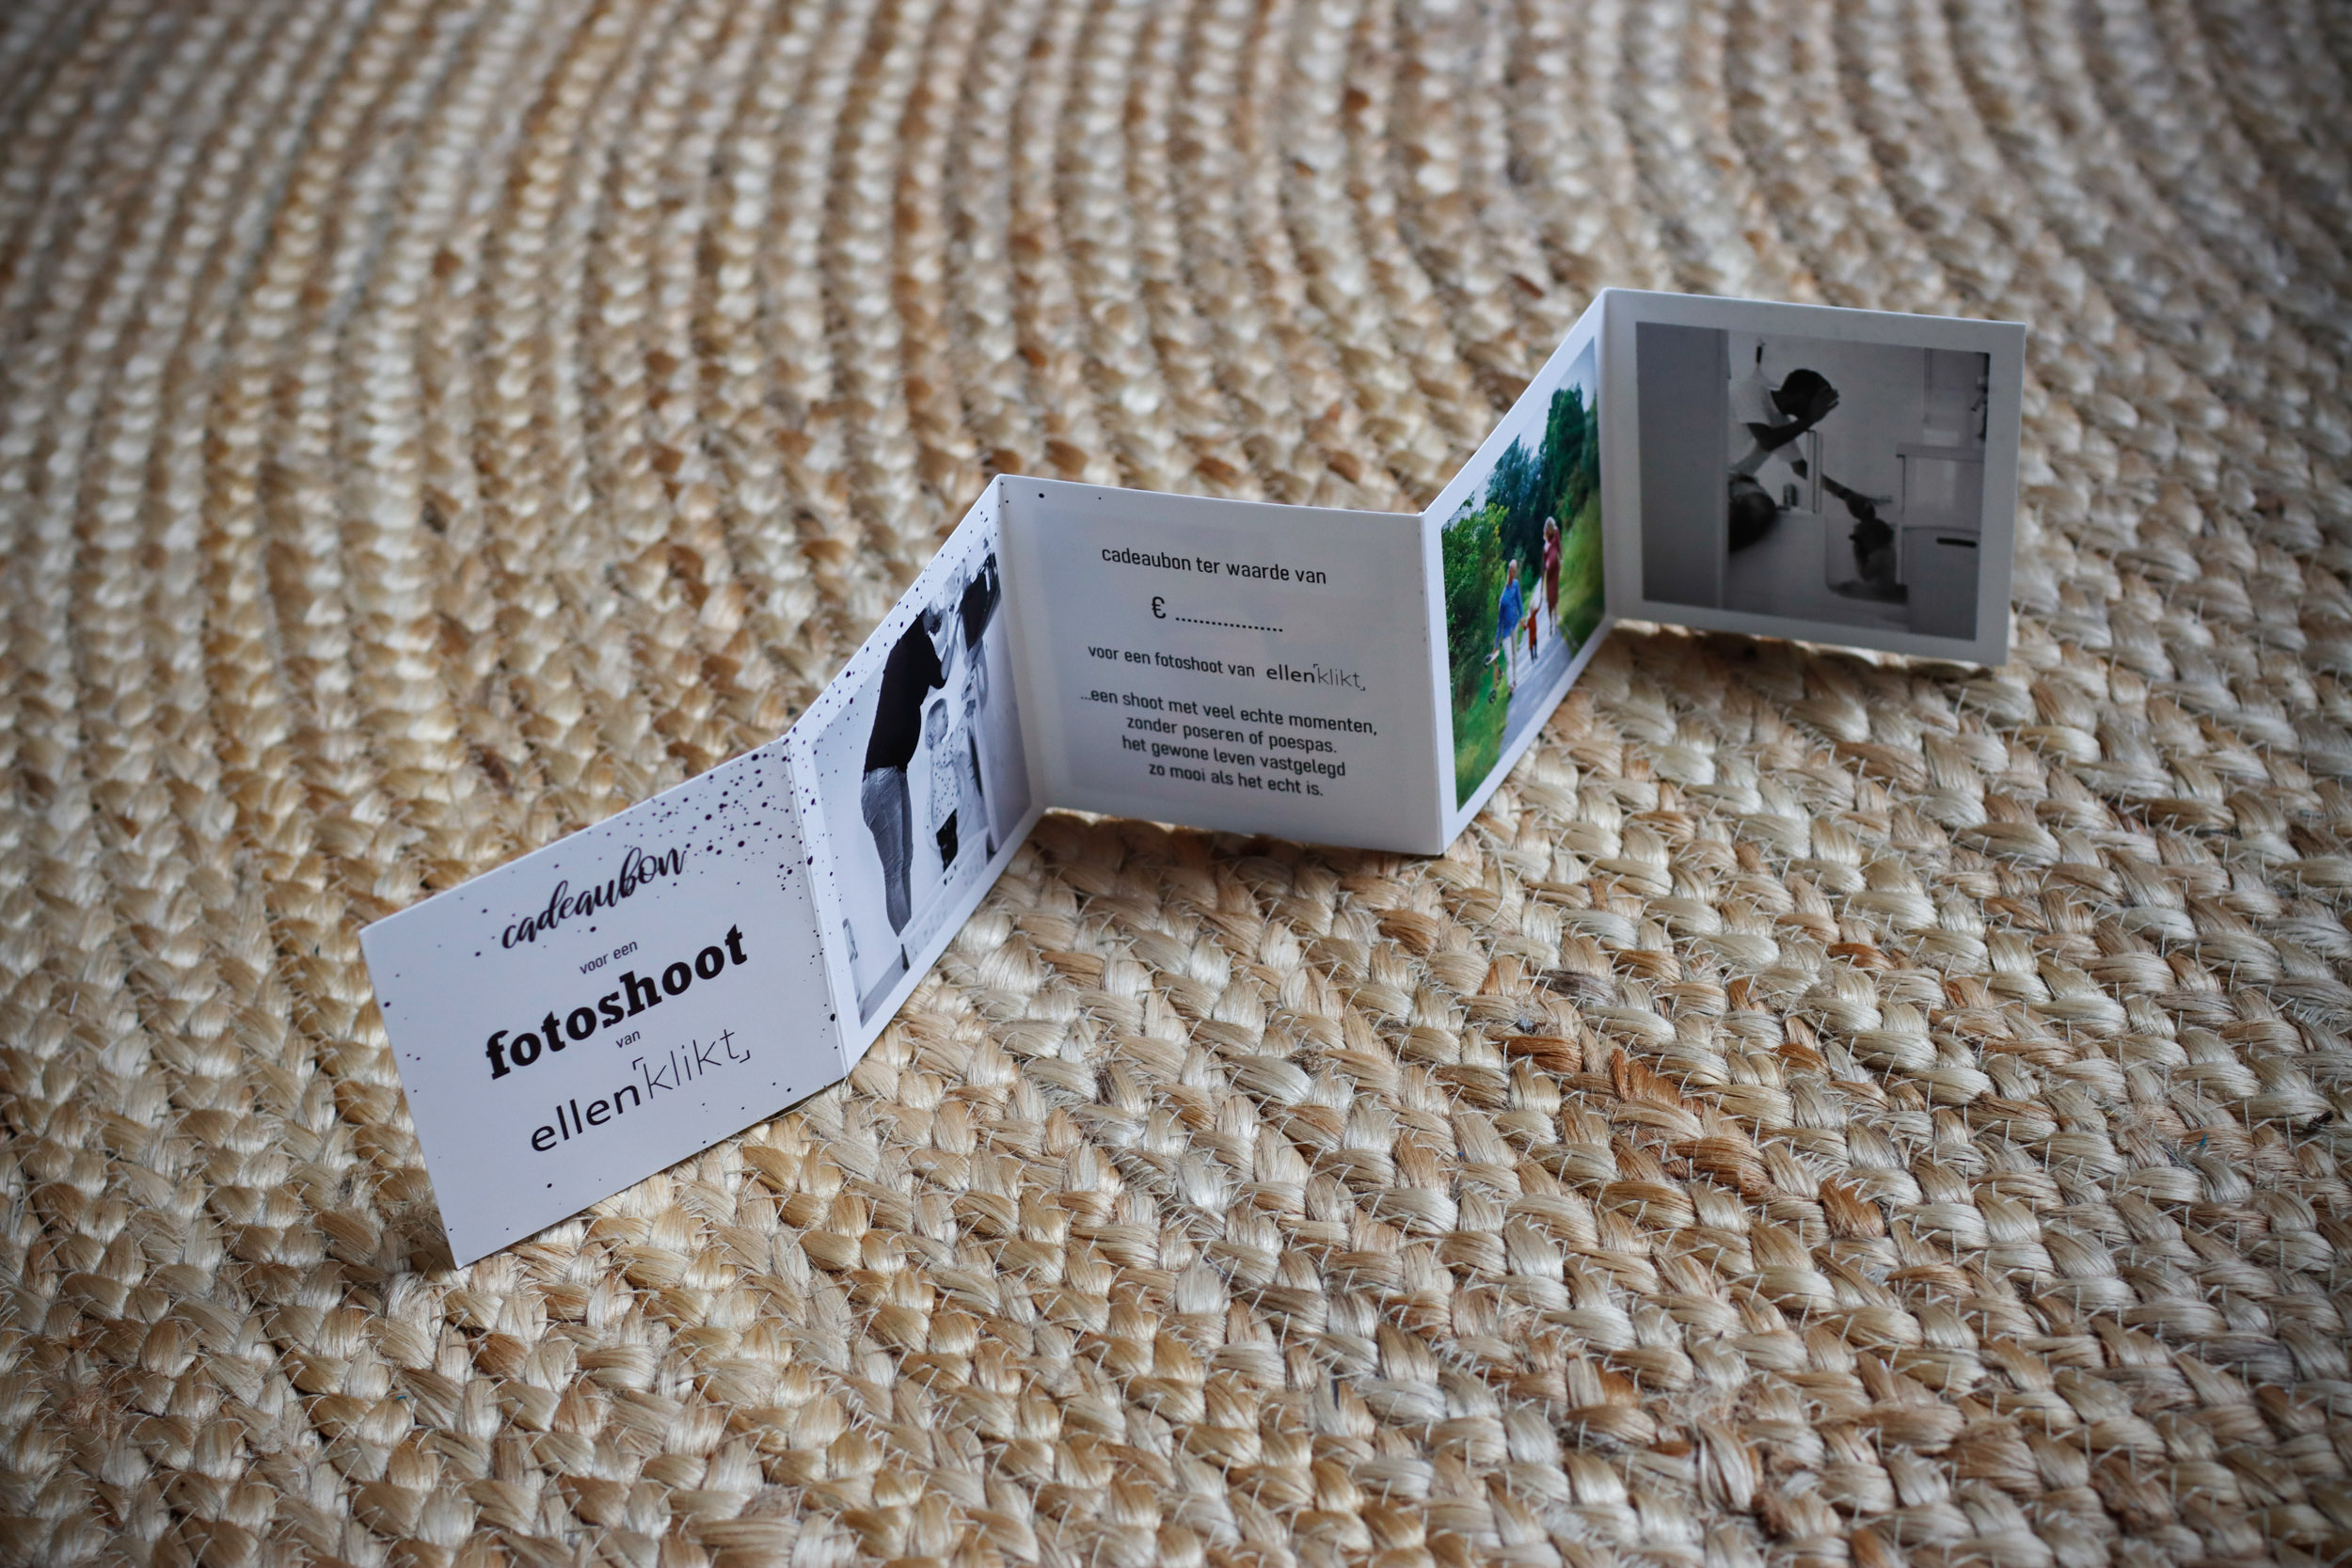 Op deze foto staat een cadeaubon voor een fotoshoot van ellenklikt. Het zigzaggende kaartje van karton met foto's en tekst toont de binnenkant, waarop de gever zelf het bedrag kan bepalen.